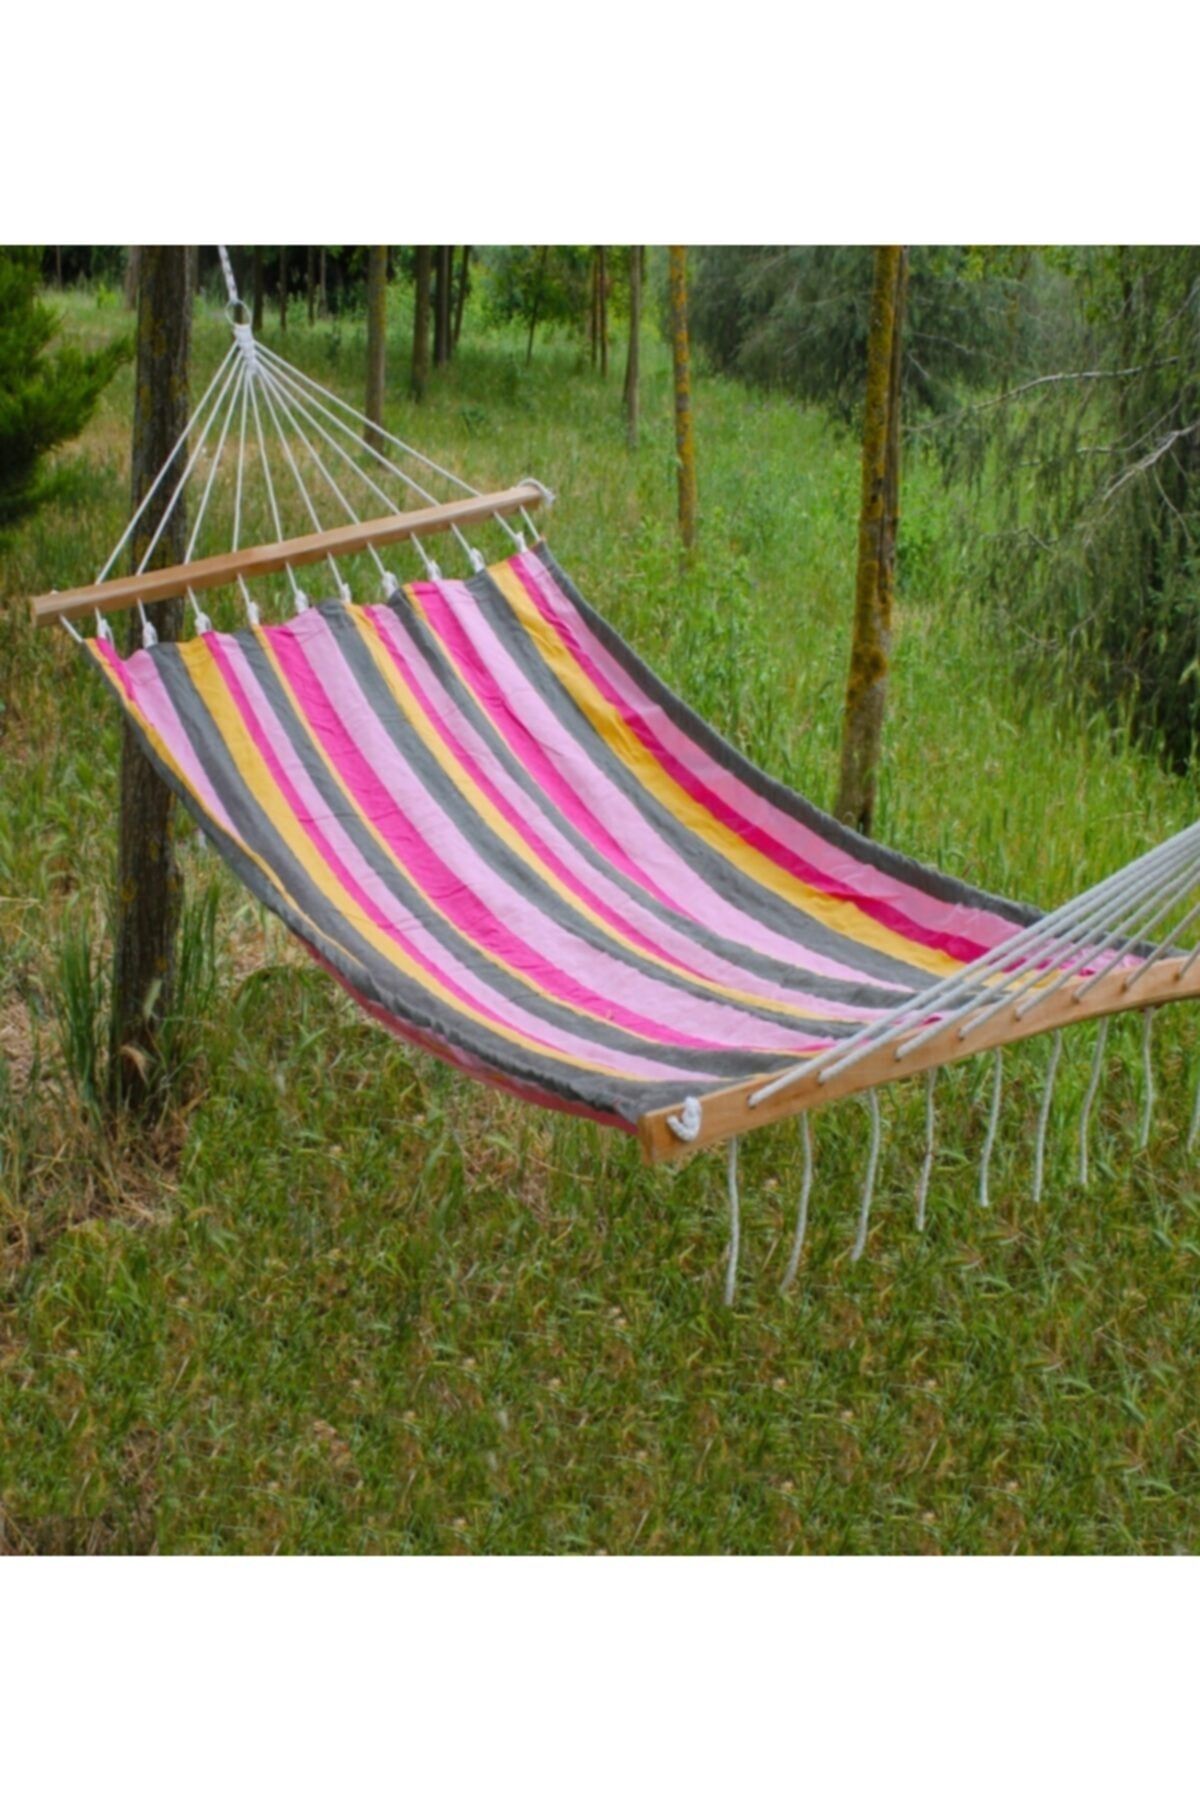 relax ipek hamak Bahçe Piknik Renkli Kumaş Hamak Kolay Kurulum Bahçe Piknik Yazlık Kamp Salıncak